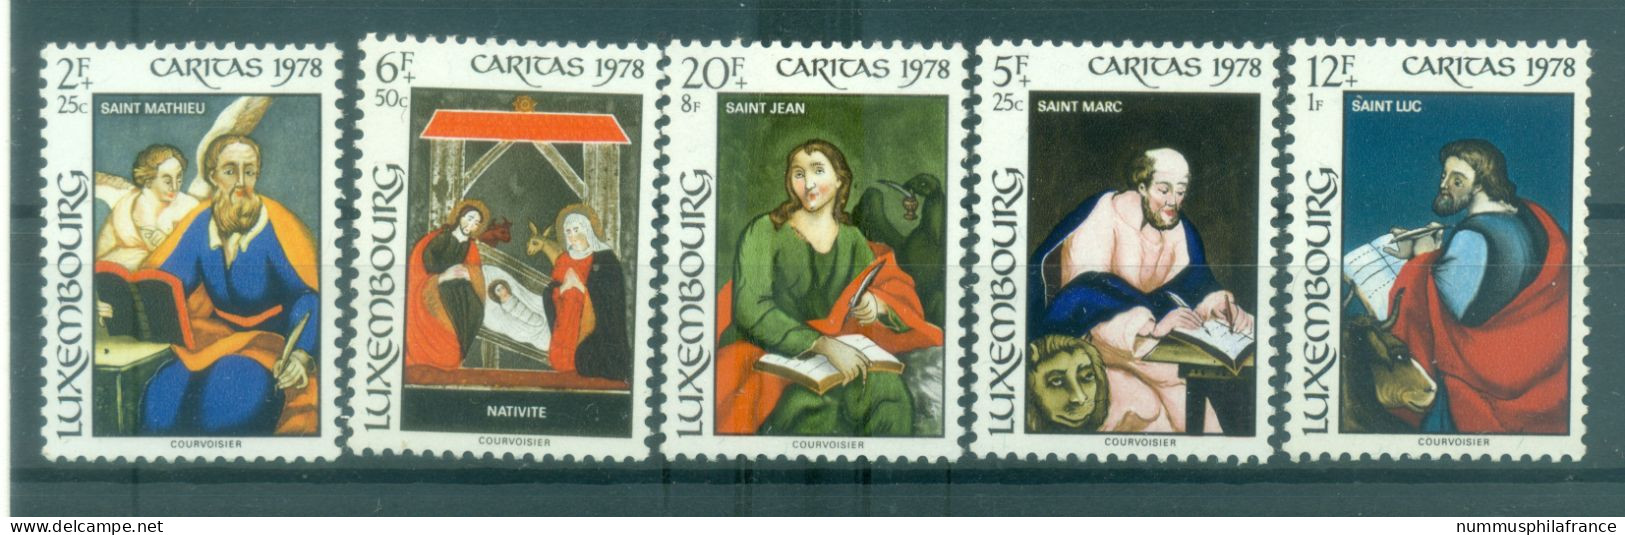 Luxembourg 1978 - Y & T N. 926/30 - Caritas (Michel N. 976/80) - Unused Stamps